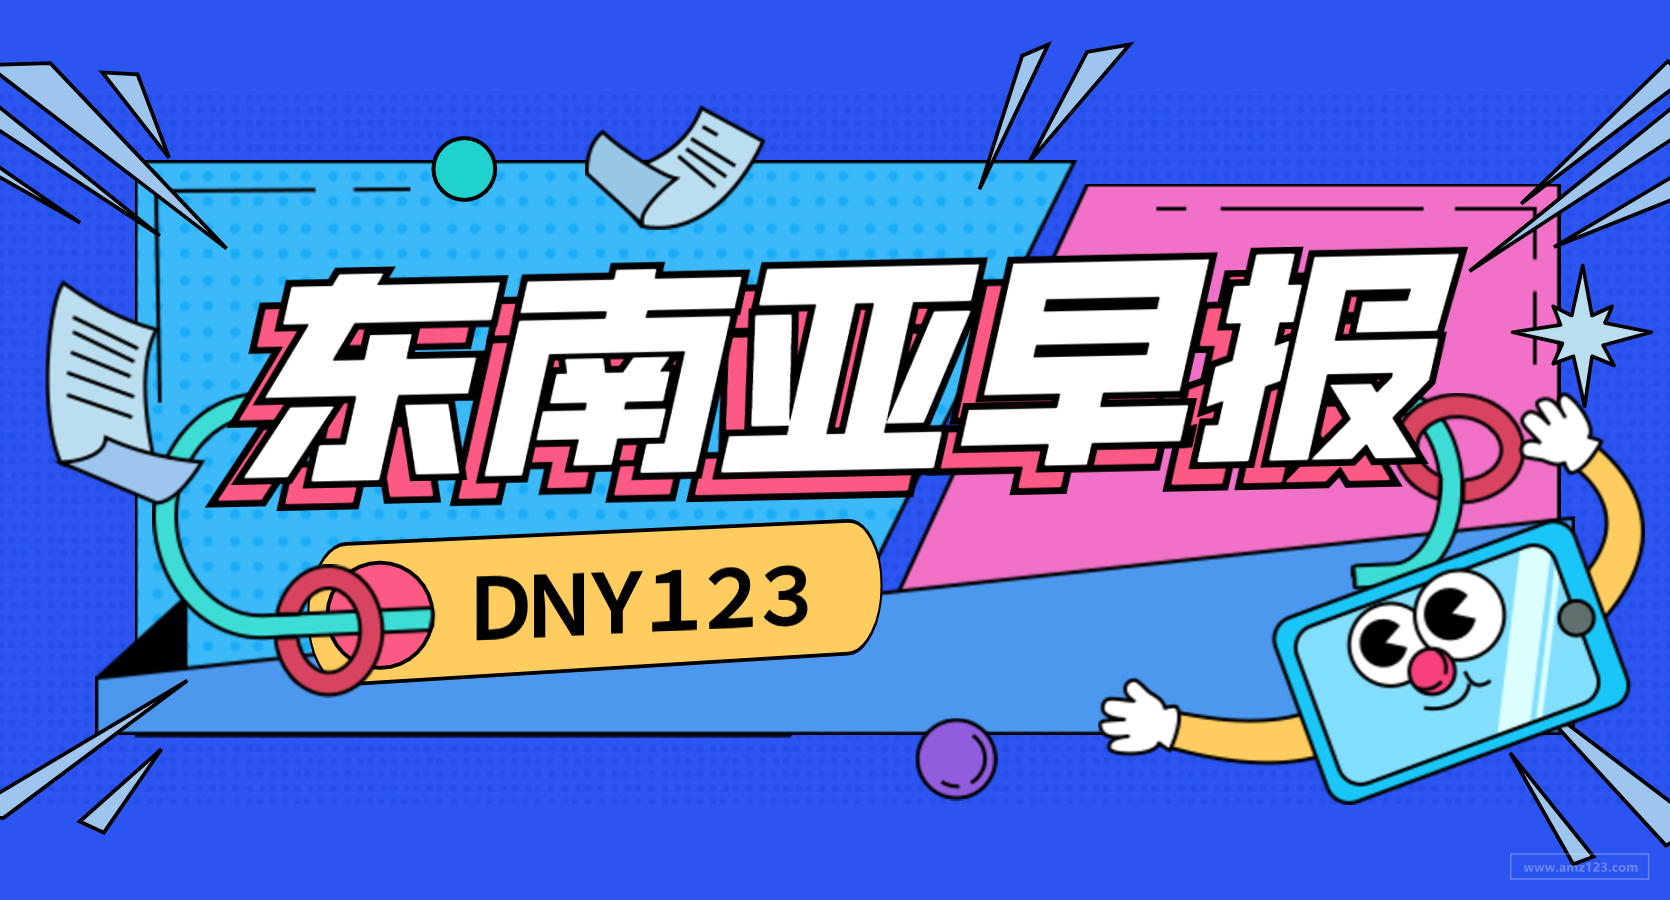 【DNY123跨境早报】Shopee关闭马来西亚站点LWE渠道，Zalora和支付平台OVO达成合作